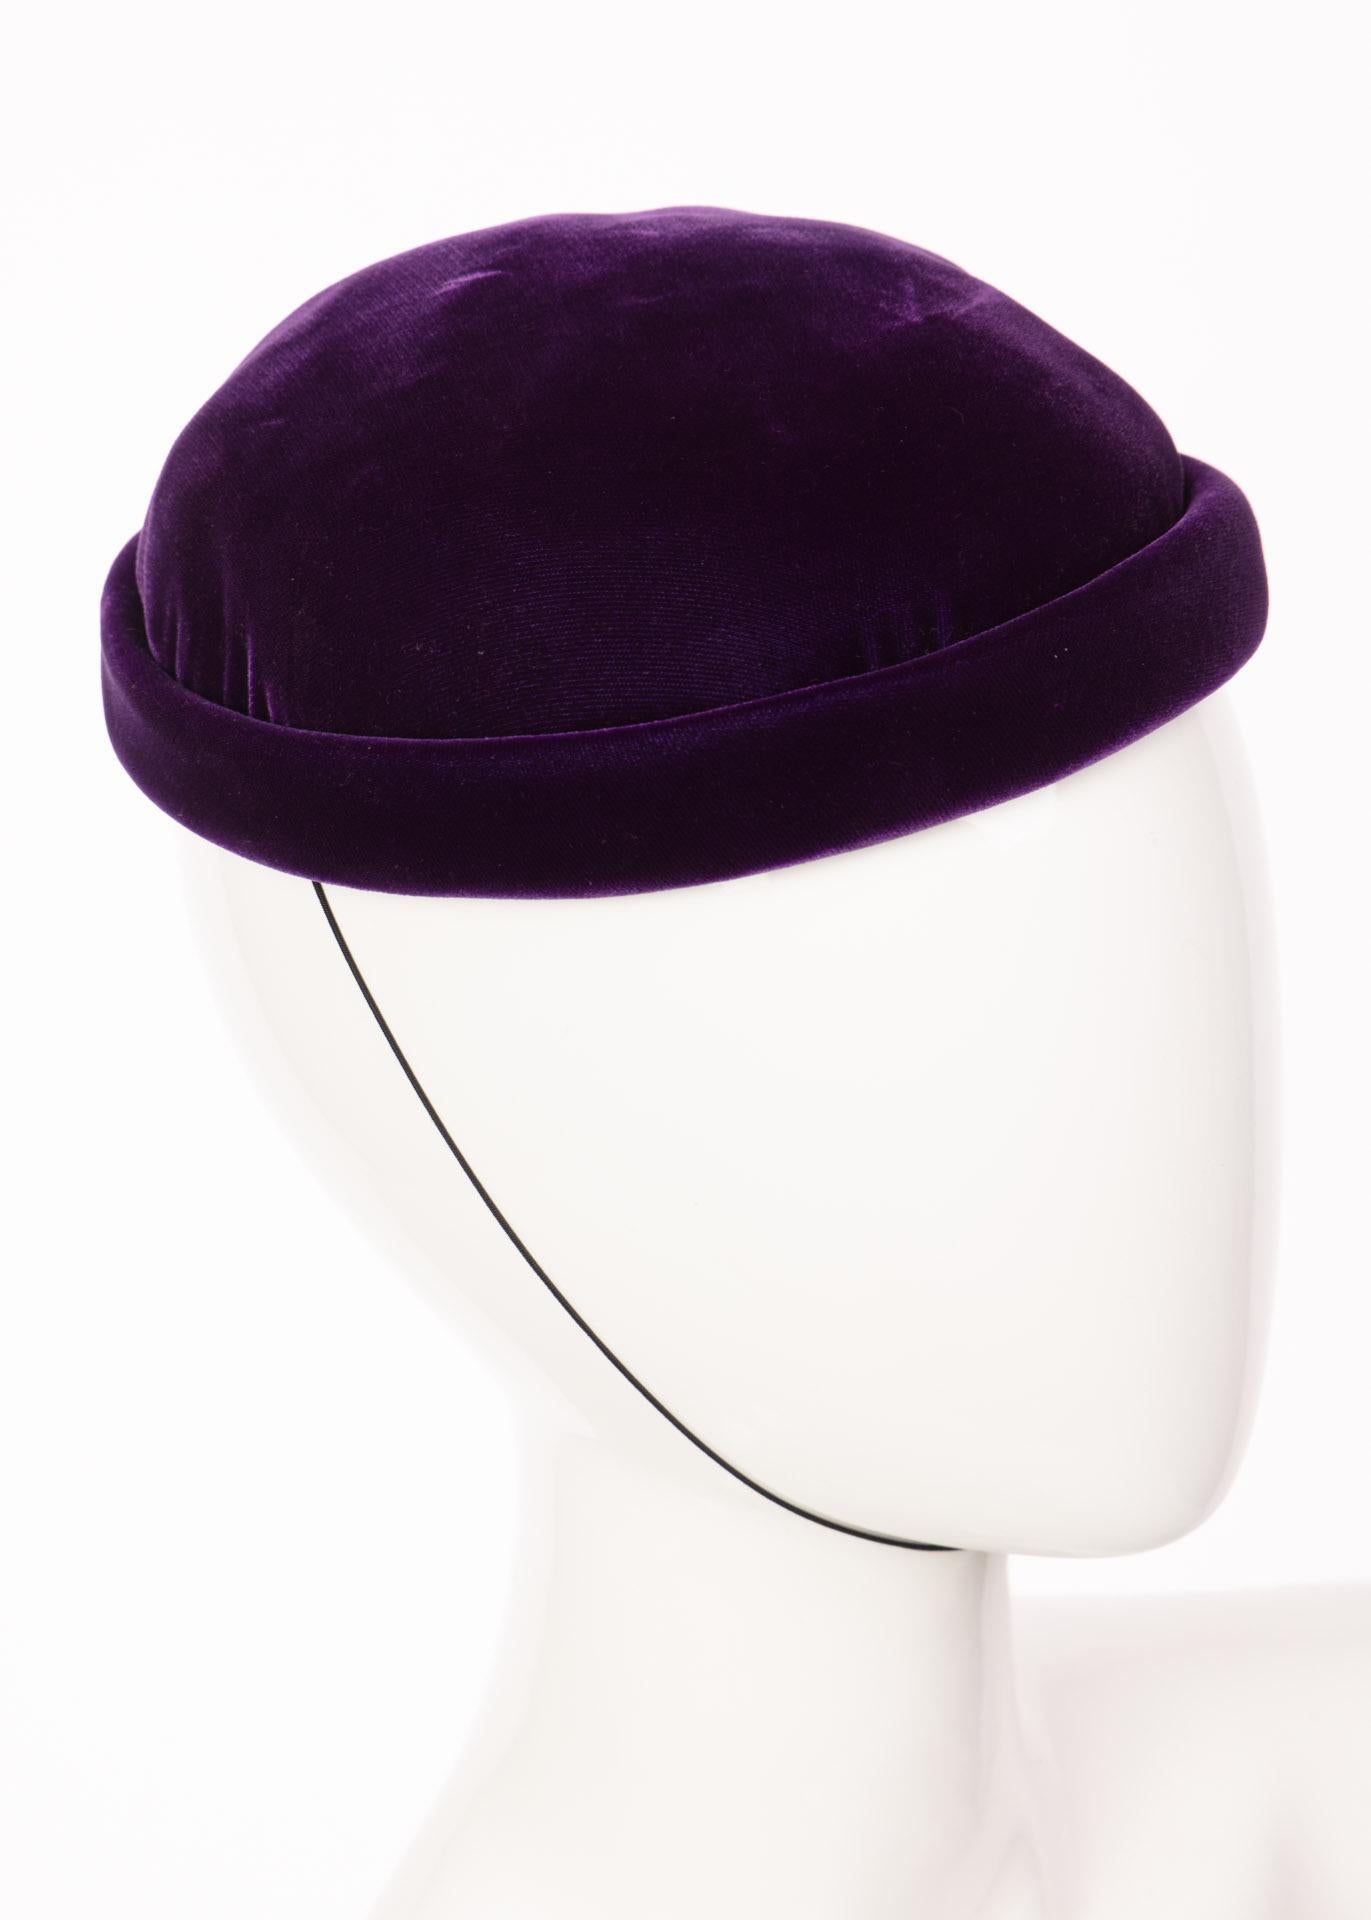 Chapeau vintage en velours de soie violet de la boutique Givenchy.
Le chapeau est structuré avec un bord roulé et une mentonnière élastique. 
Entièrement doublé et muni d'un bandeau de transpiration en ruban gros grain.
Excellent état. 

Estimation